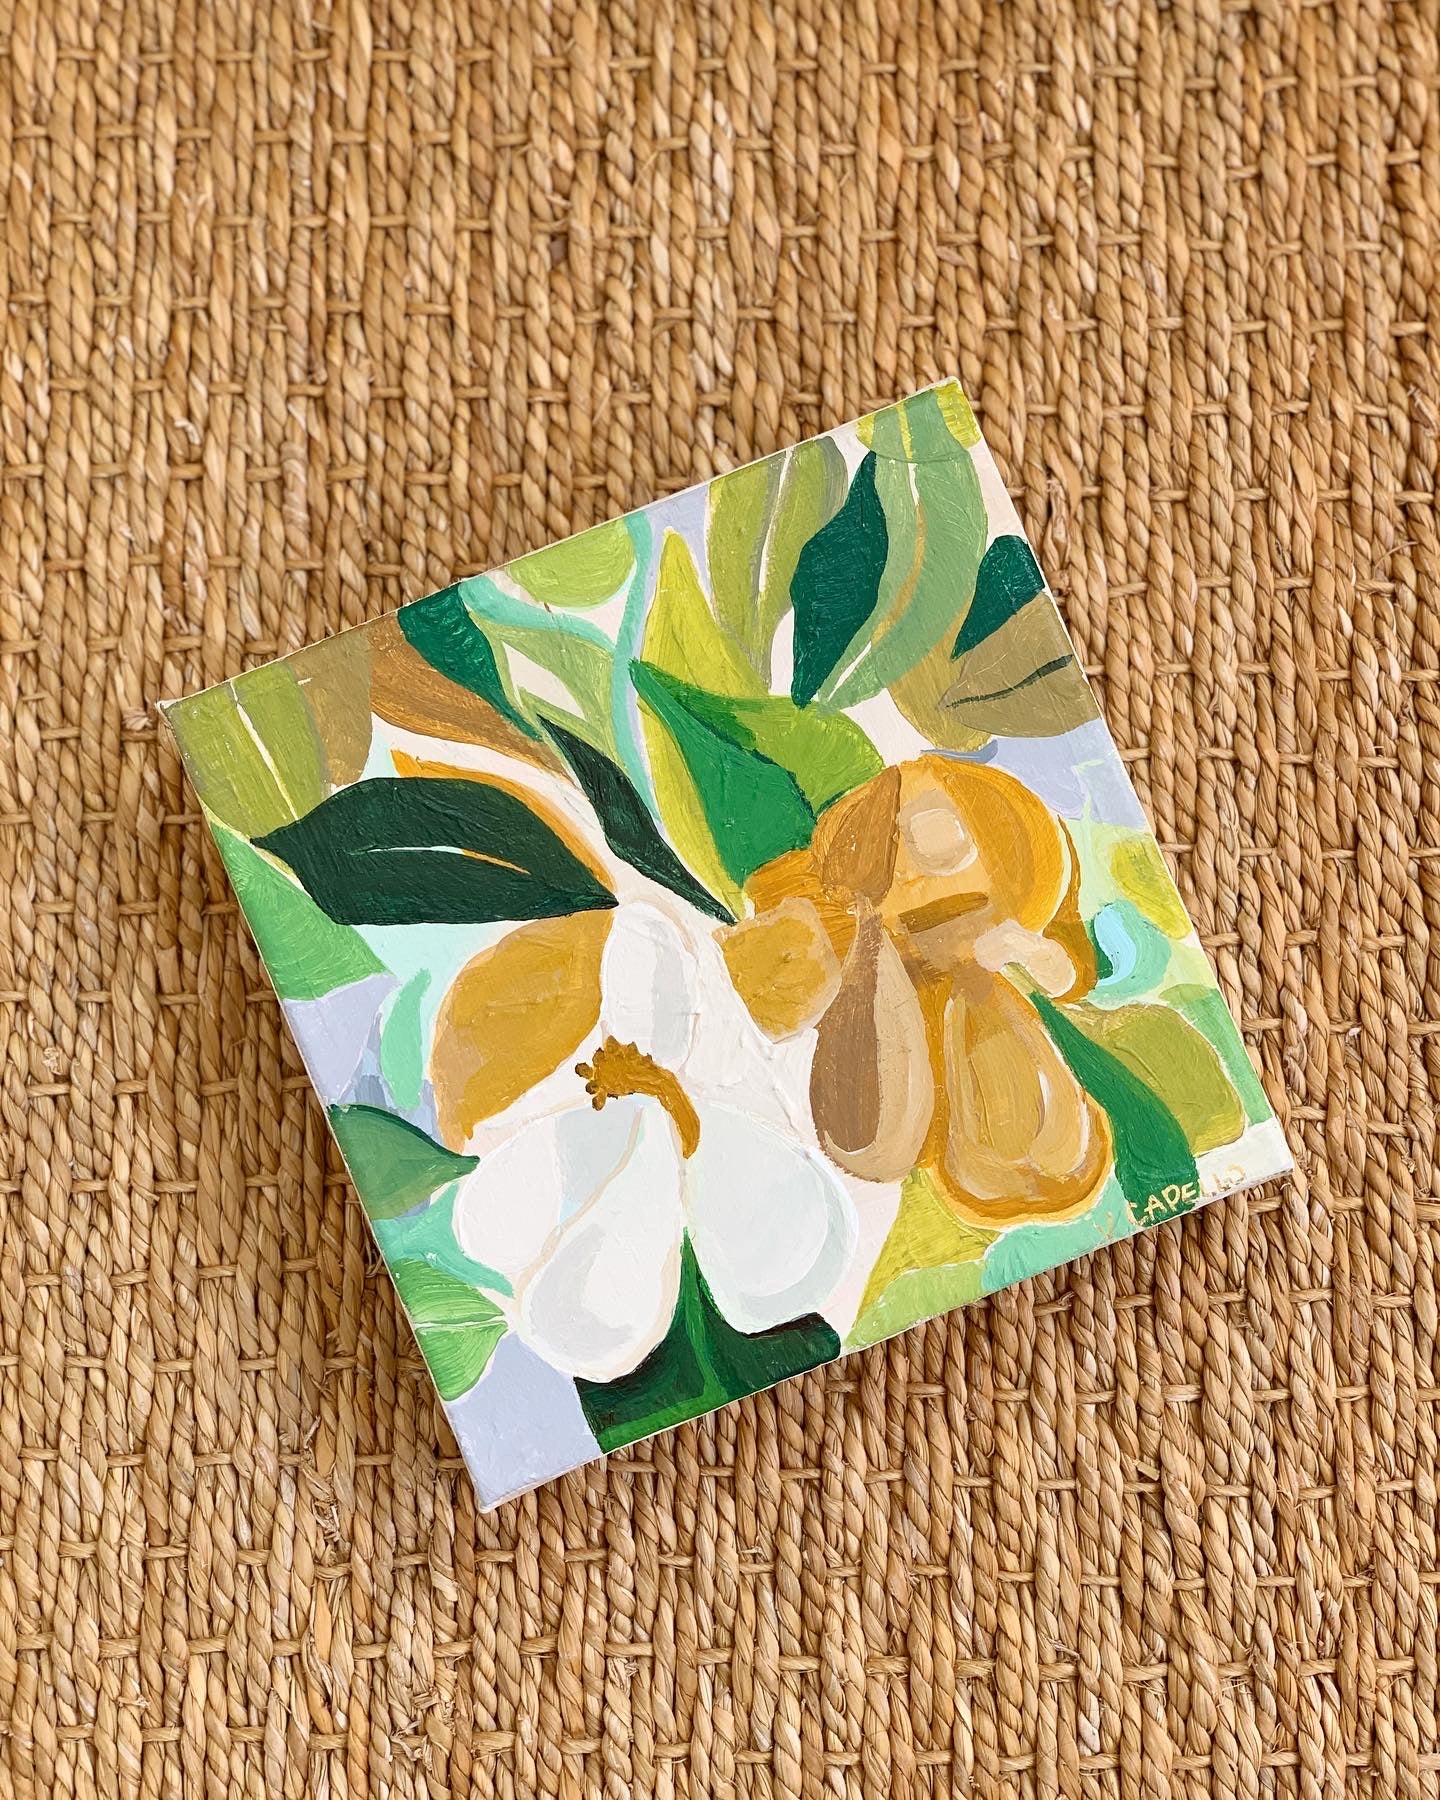 “Magnolia Acrylic Original Art, Part II” by Victoria C. Designs